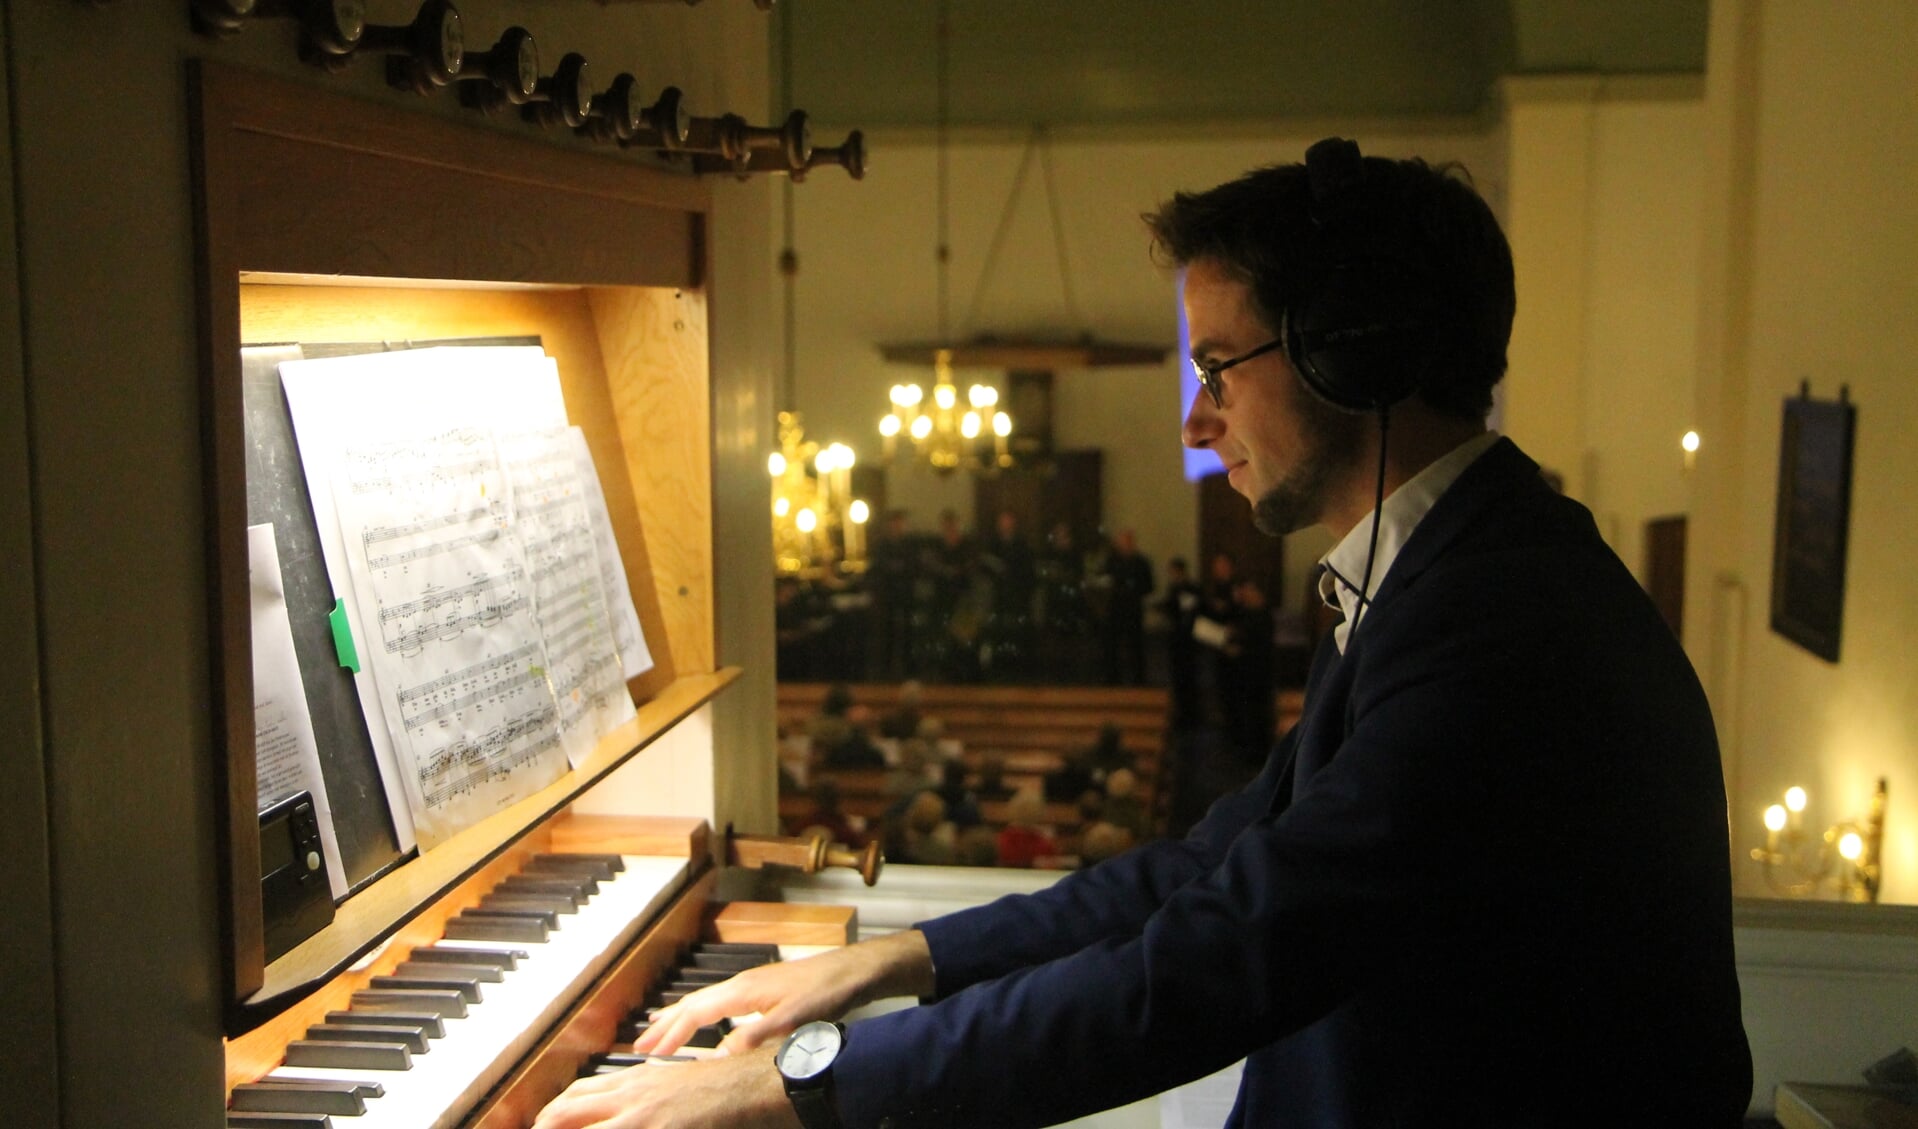 Arjan Veen bespeelt het orgel.Op de achtergrond is voor de preekstoel het koor Voci Vocal te zien